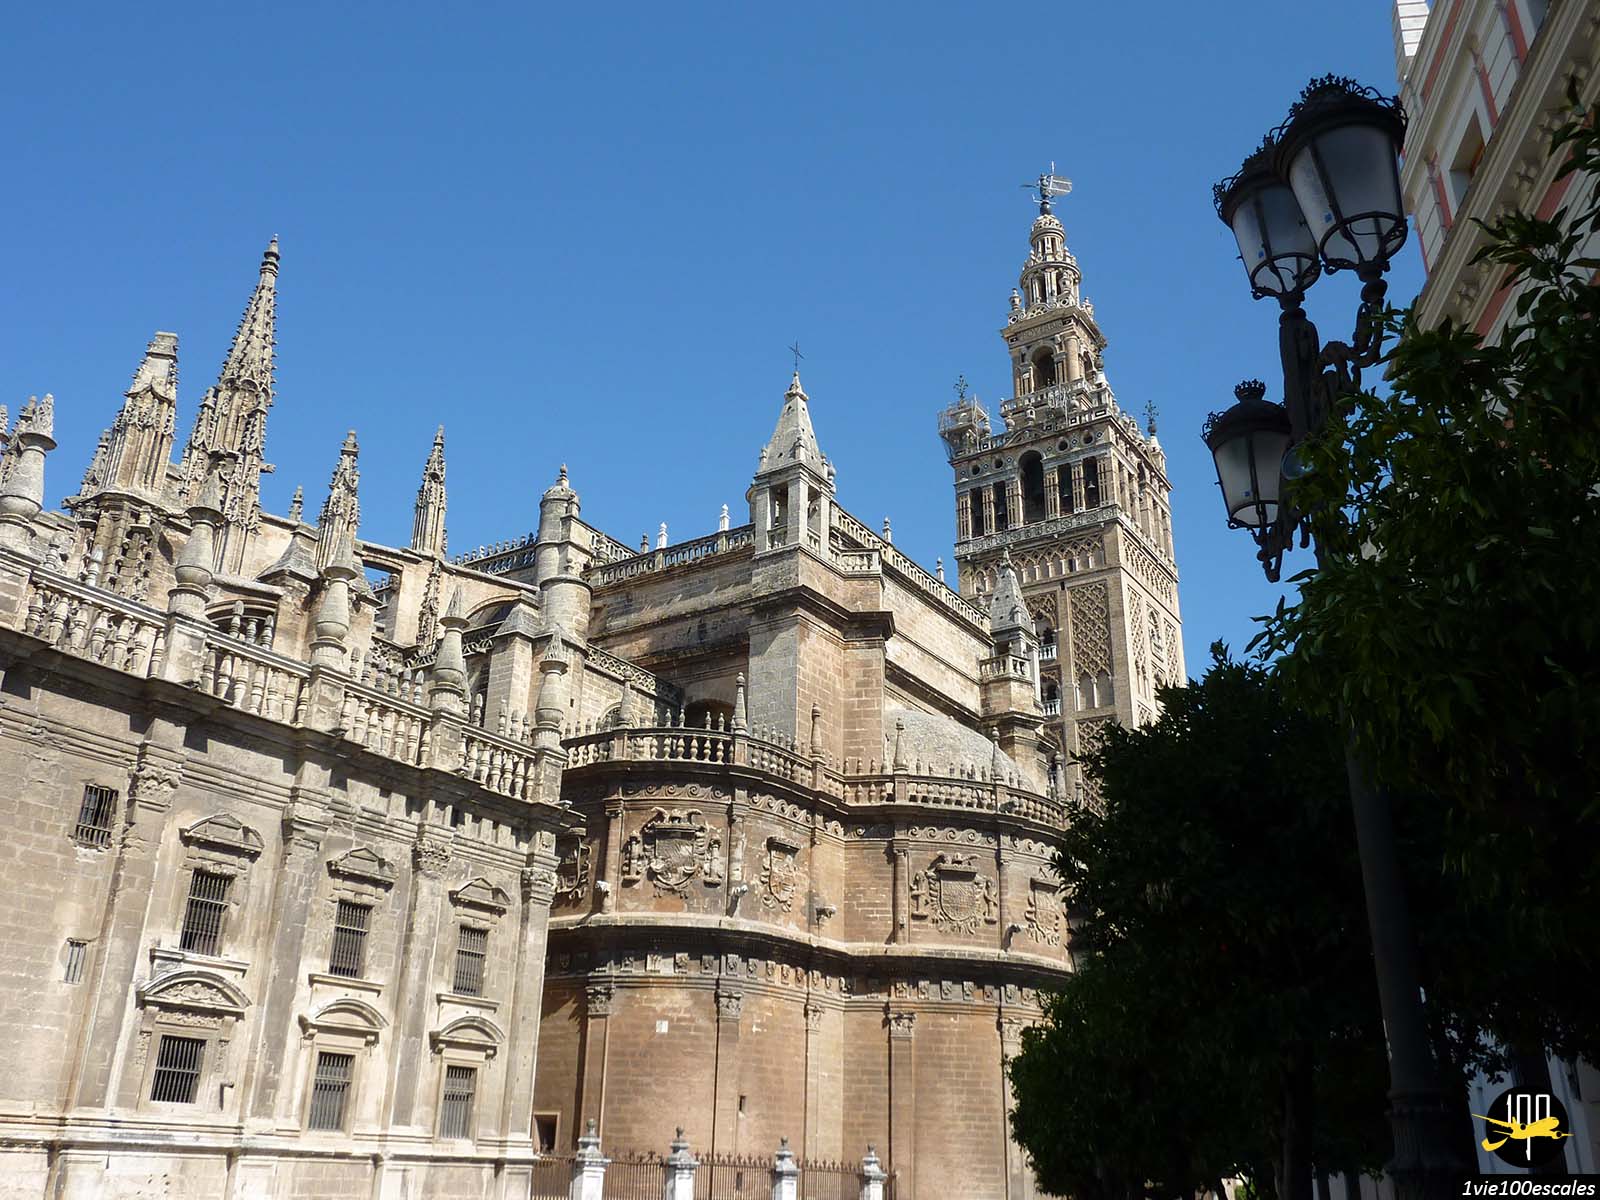 Le minaret de la cathédrale de Séville, la Giralda, est la tour de la mosquée qui fut conservée après la démolition de celle-ci